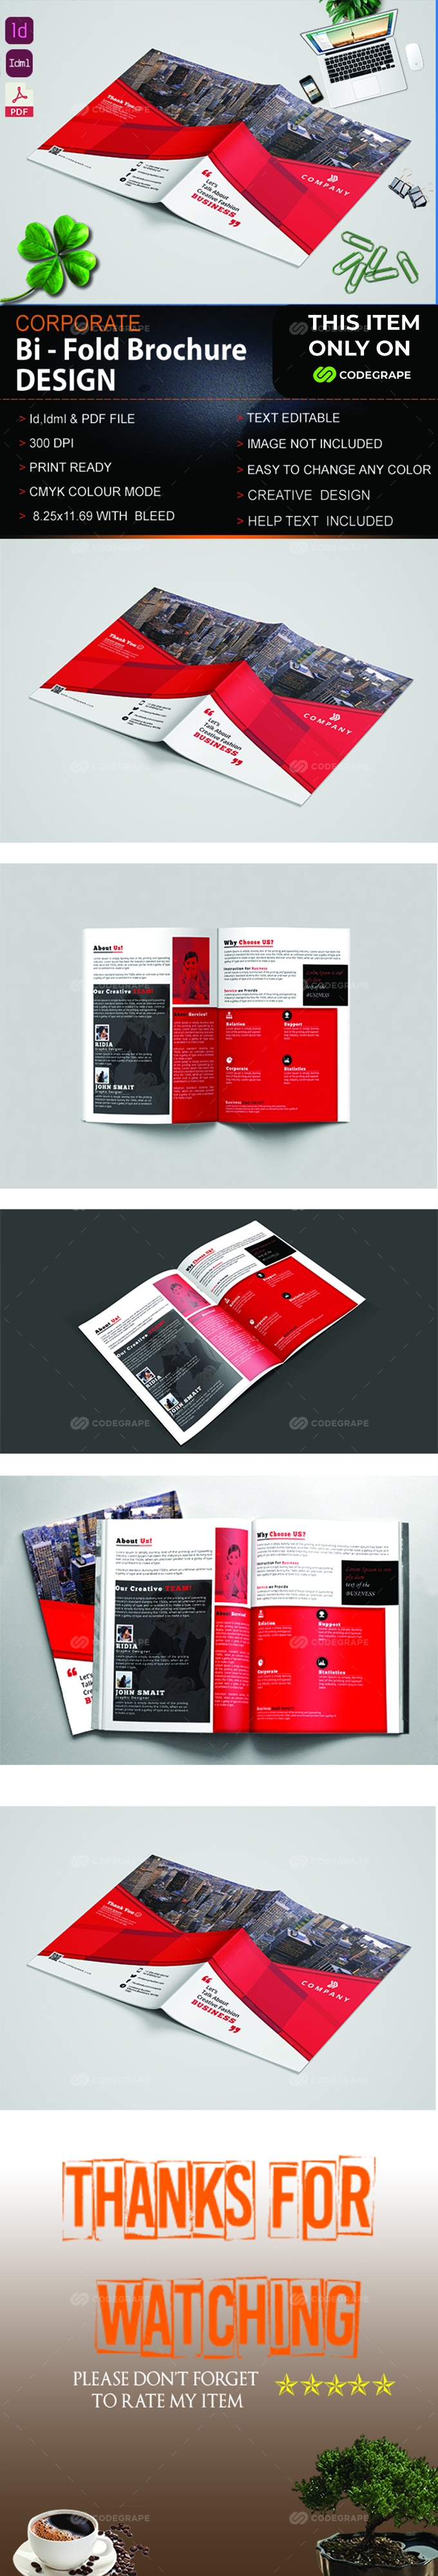 Corporate Bi Fold Brochure